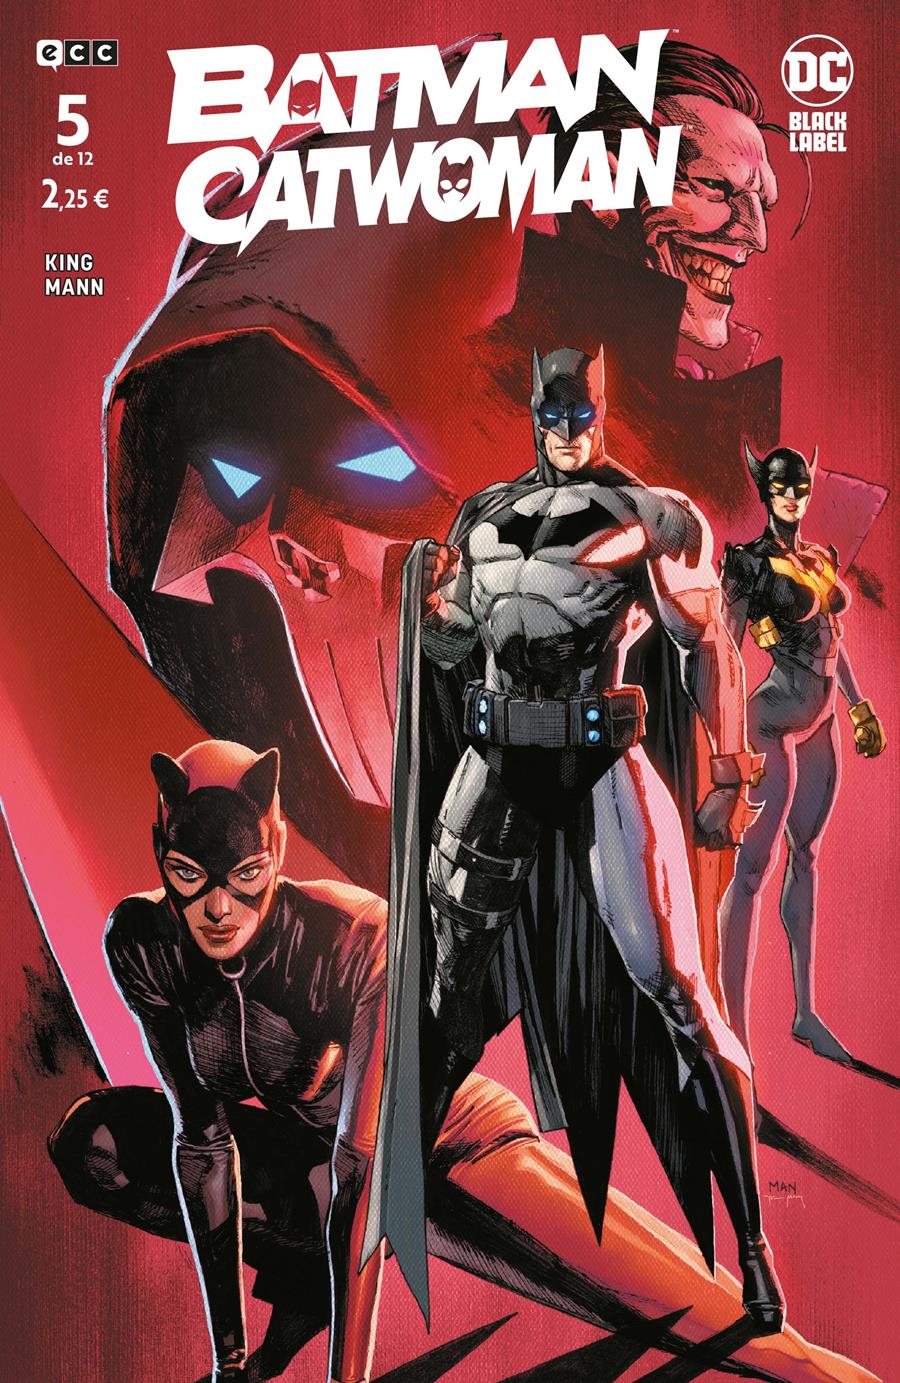 Batman/Catwoman núm. 5 de 12 | N1121-ECC26 | Clay Mann / Tom King | Terra de Còmic - Tu tienda de cómics online especializada en cómics, manga y merchandising